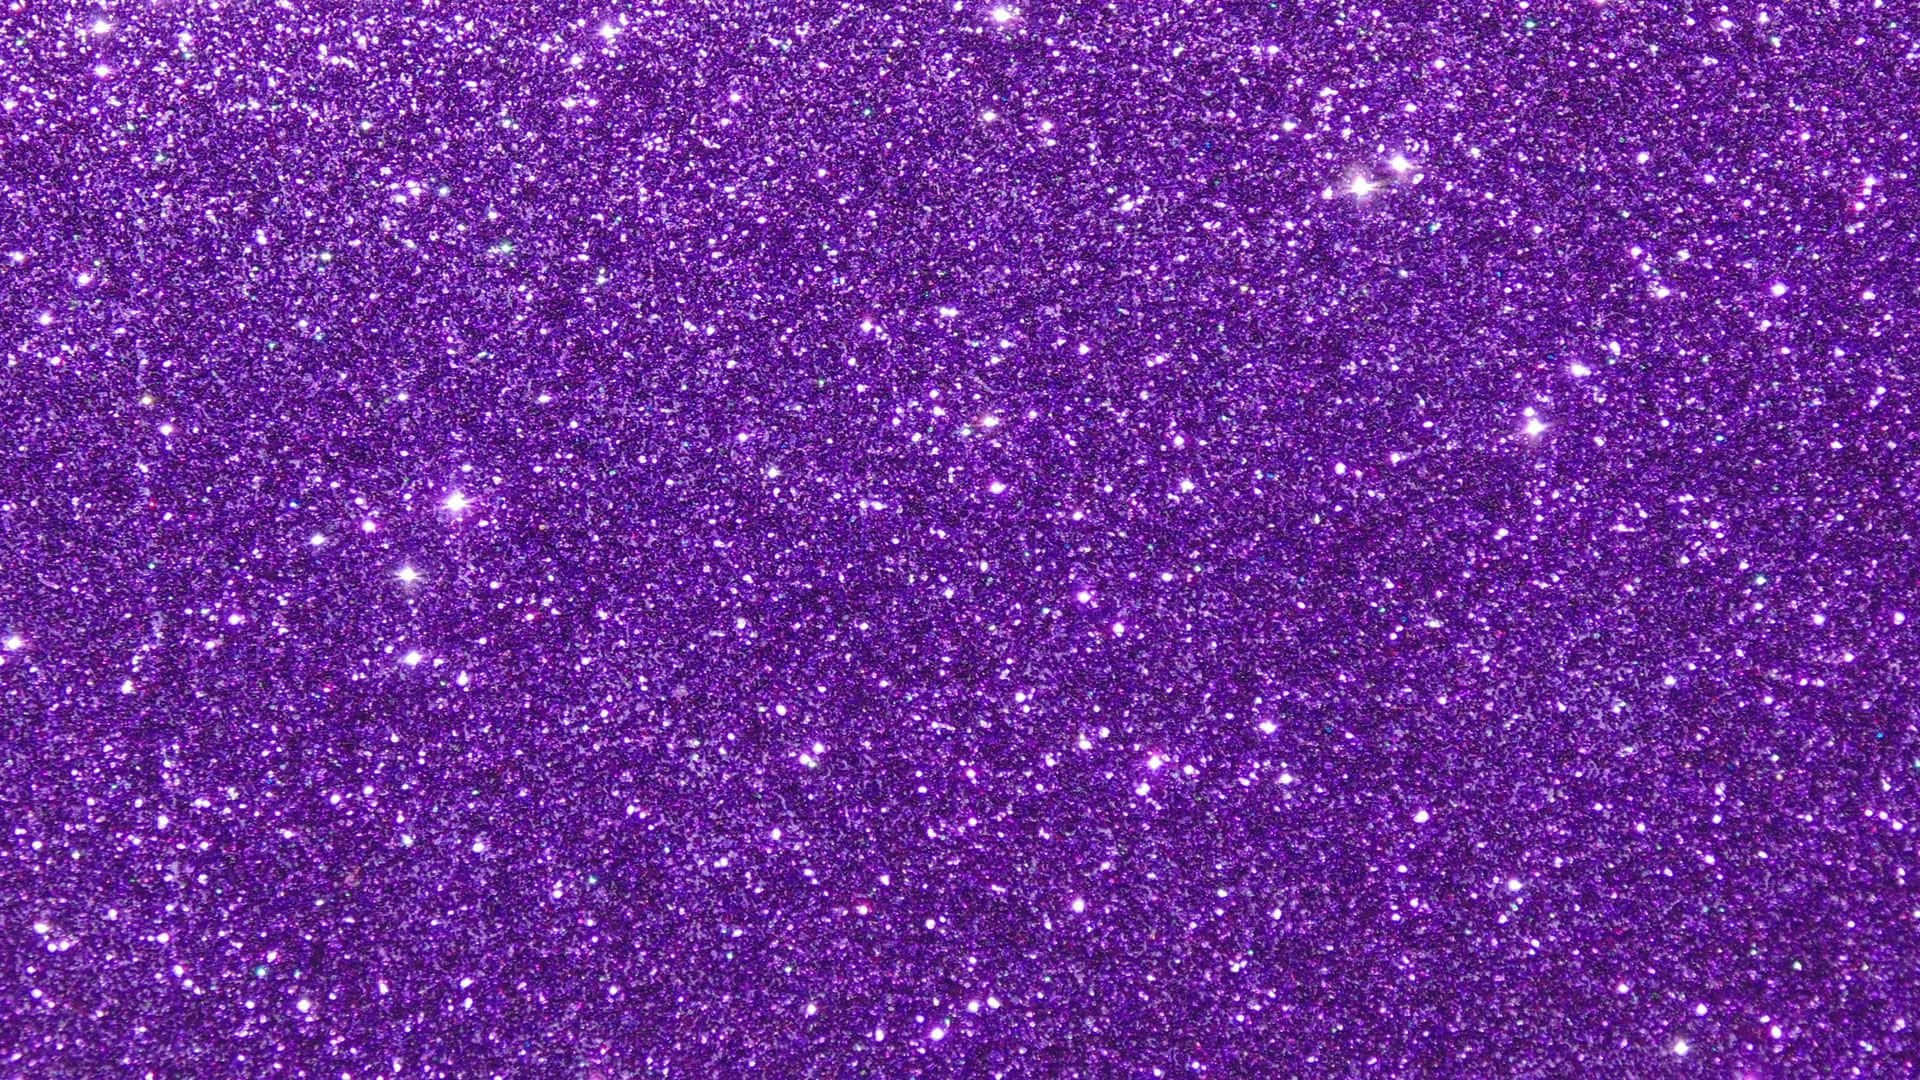 Thick Layer Of Pretty Purple Glitter